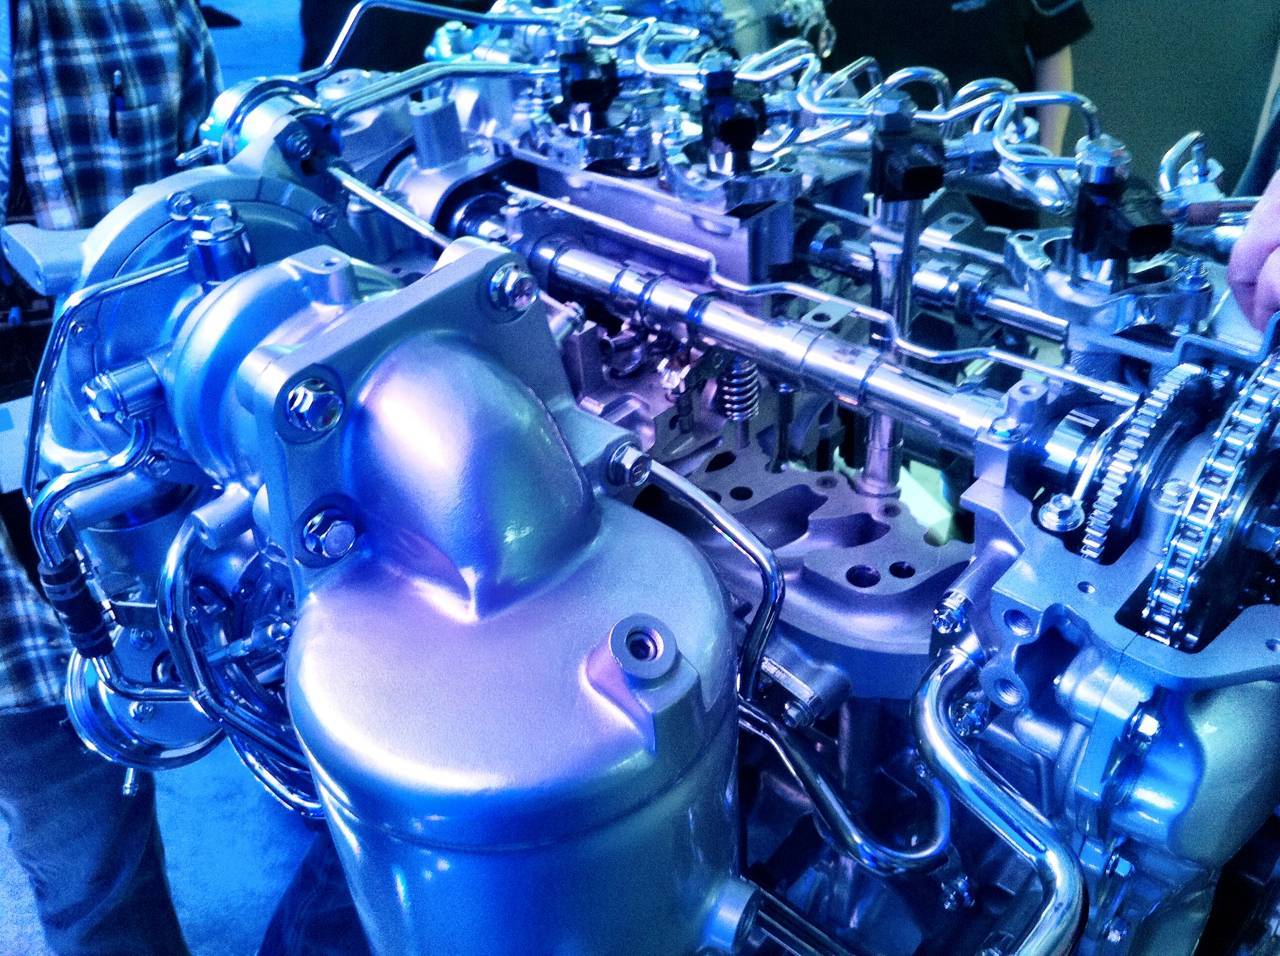 Двигатель renault k9k 1.5 dci дизель технические характеристики, расход масла, ресурс, конструкция, отзывы